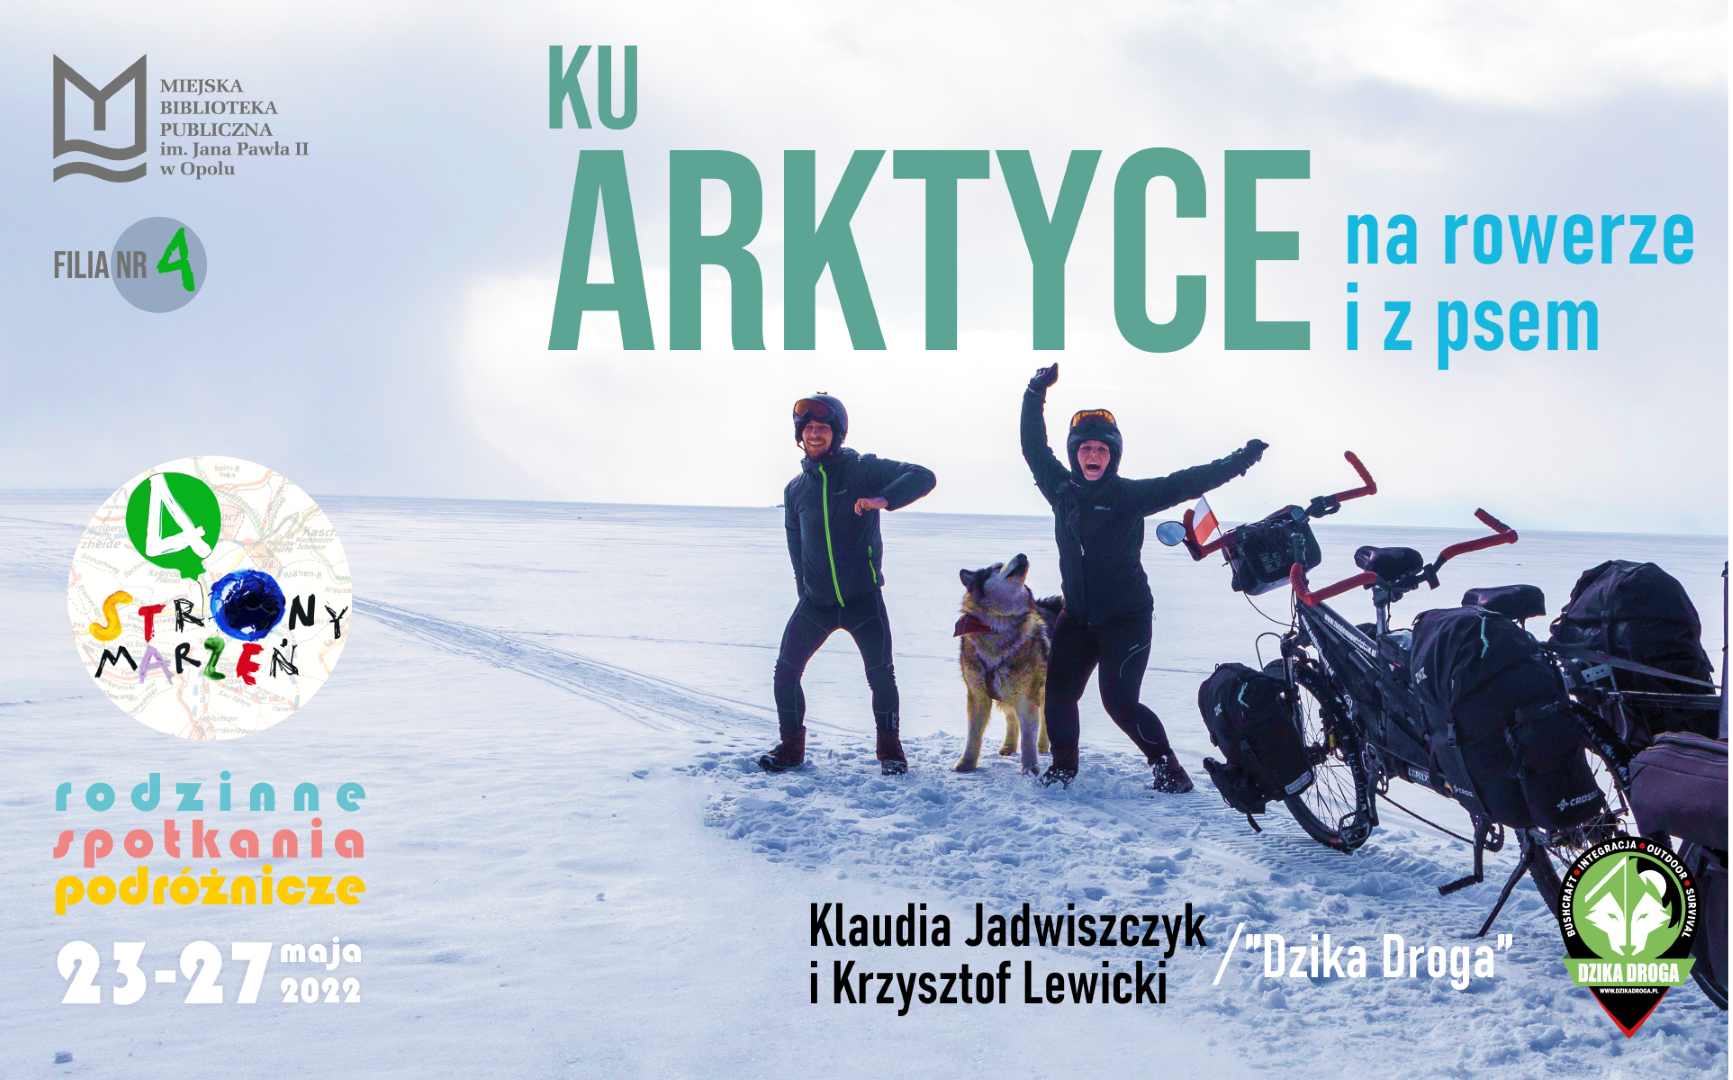 „Ku Arktyce – na rowerze i z psem” – rodzinne spotkanie podróżnicze z Klaudią Jadwiszczyk i Krzysztofem Lewickim (Dzika Droga)